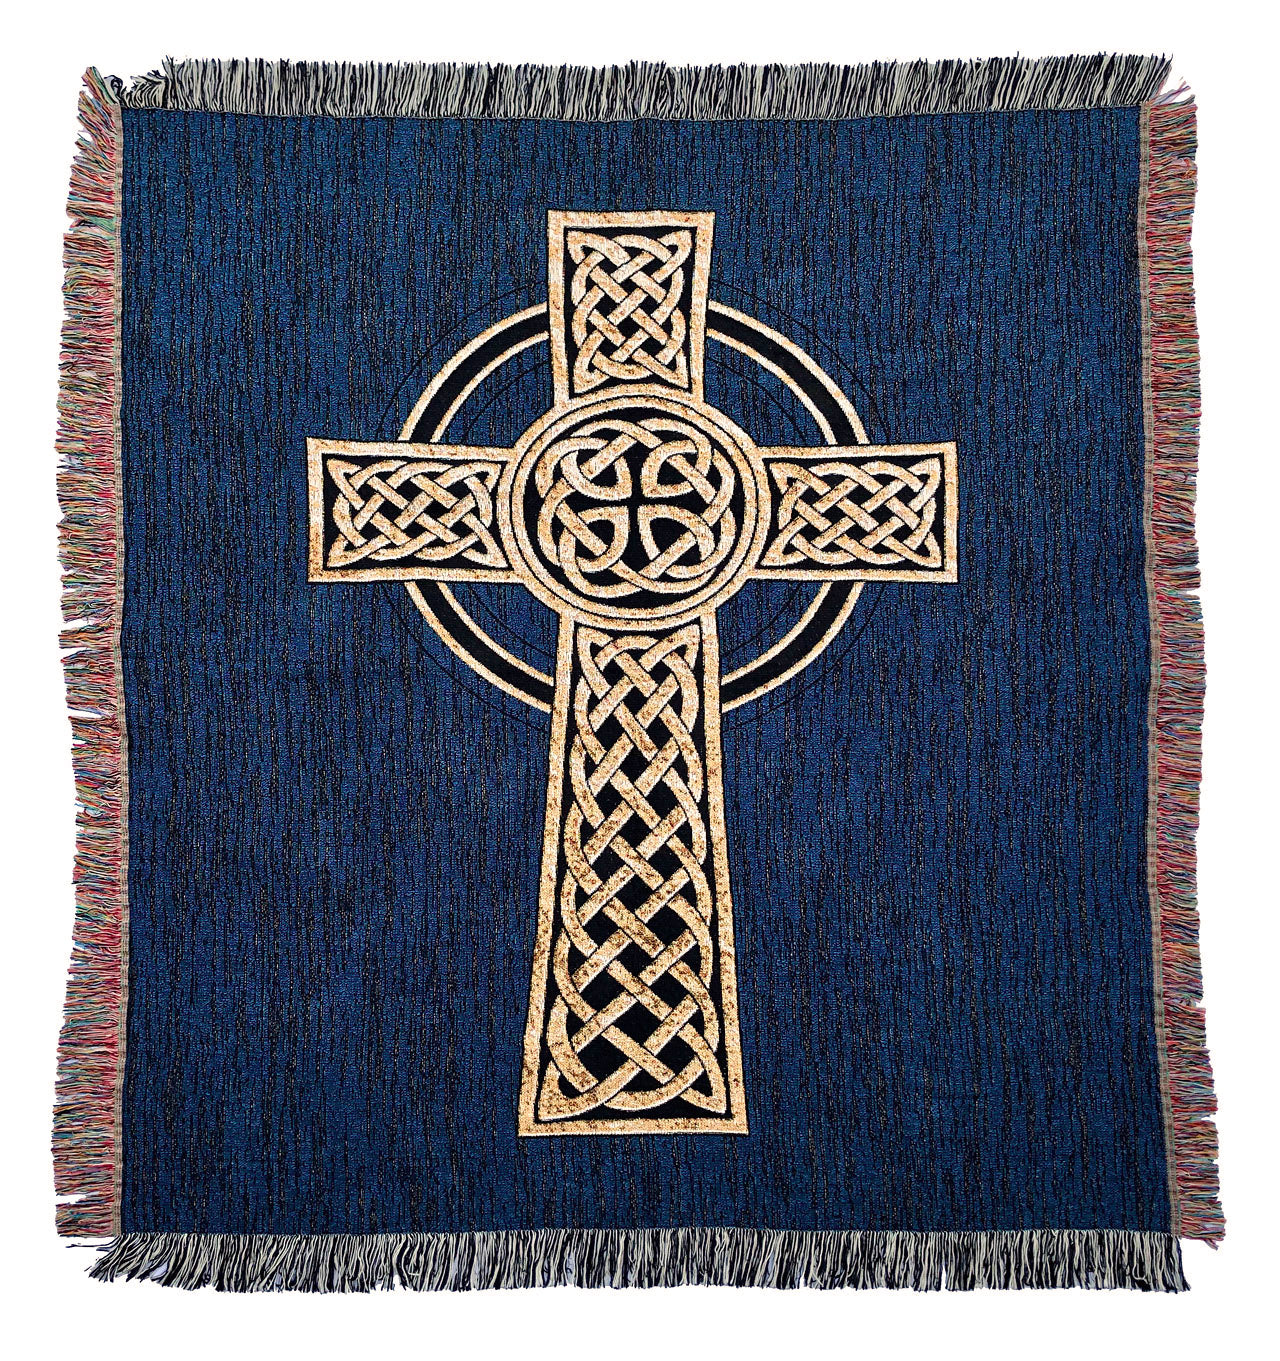 Celtic Cross Woven Blanket